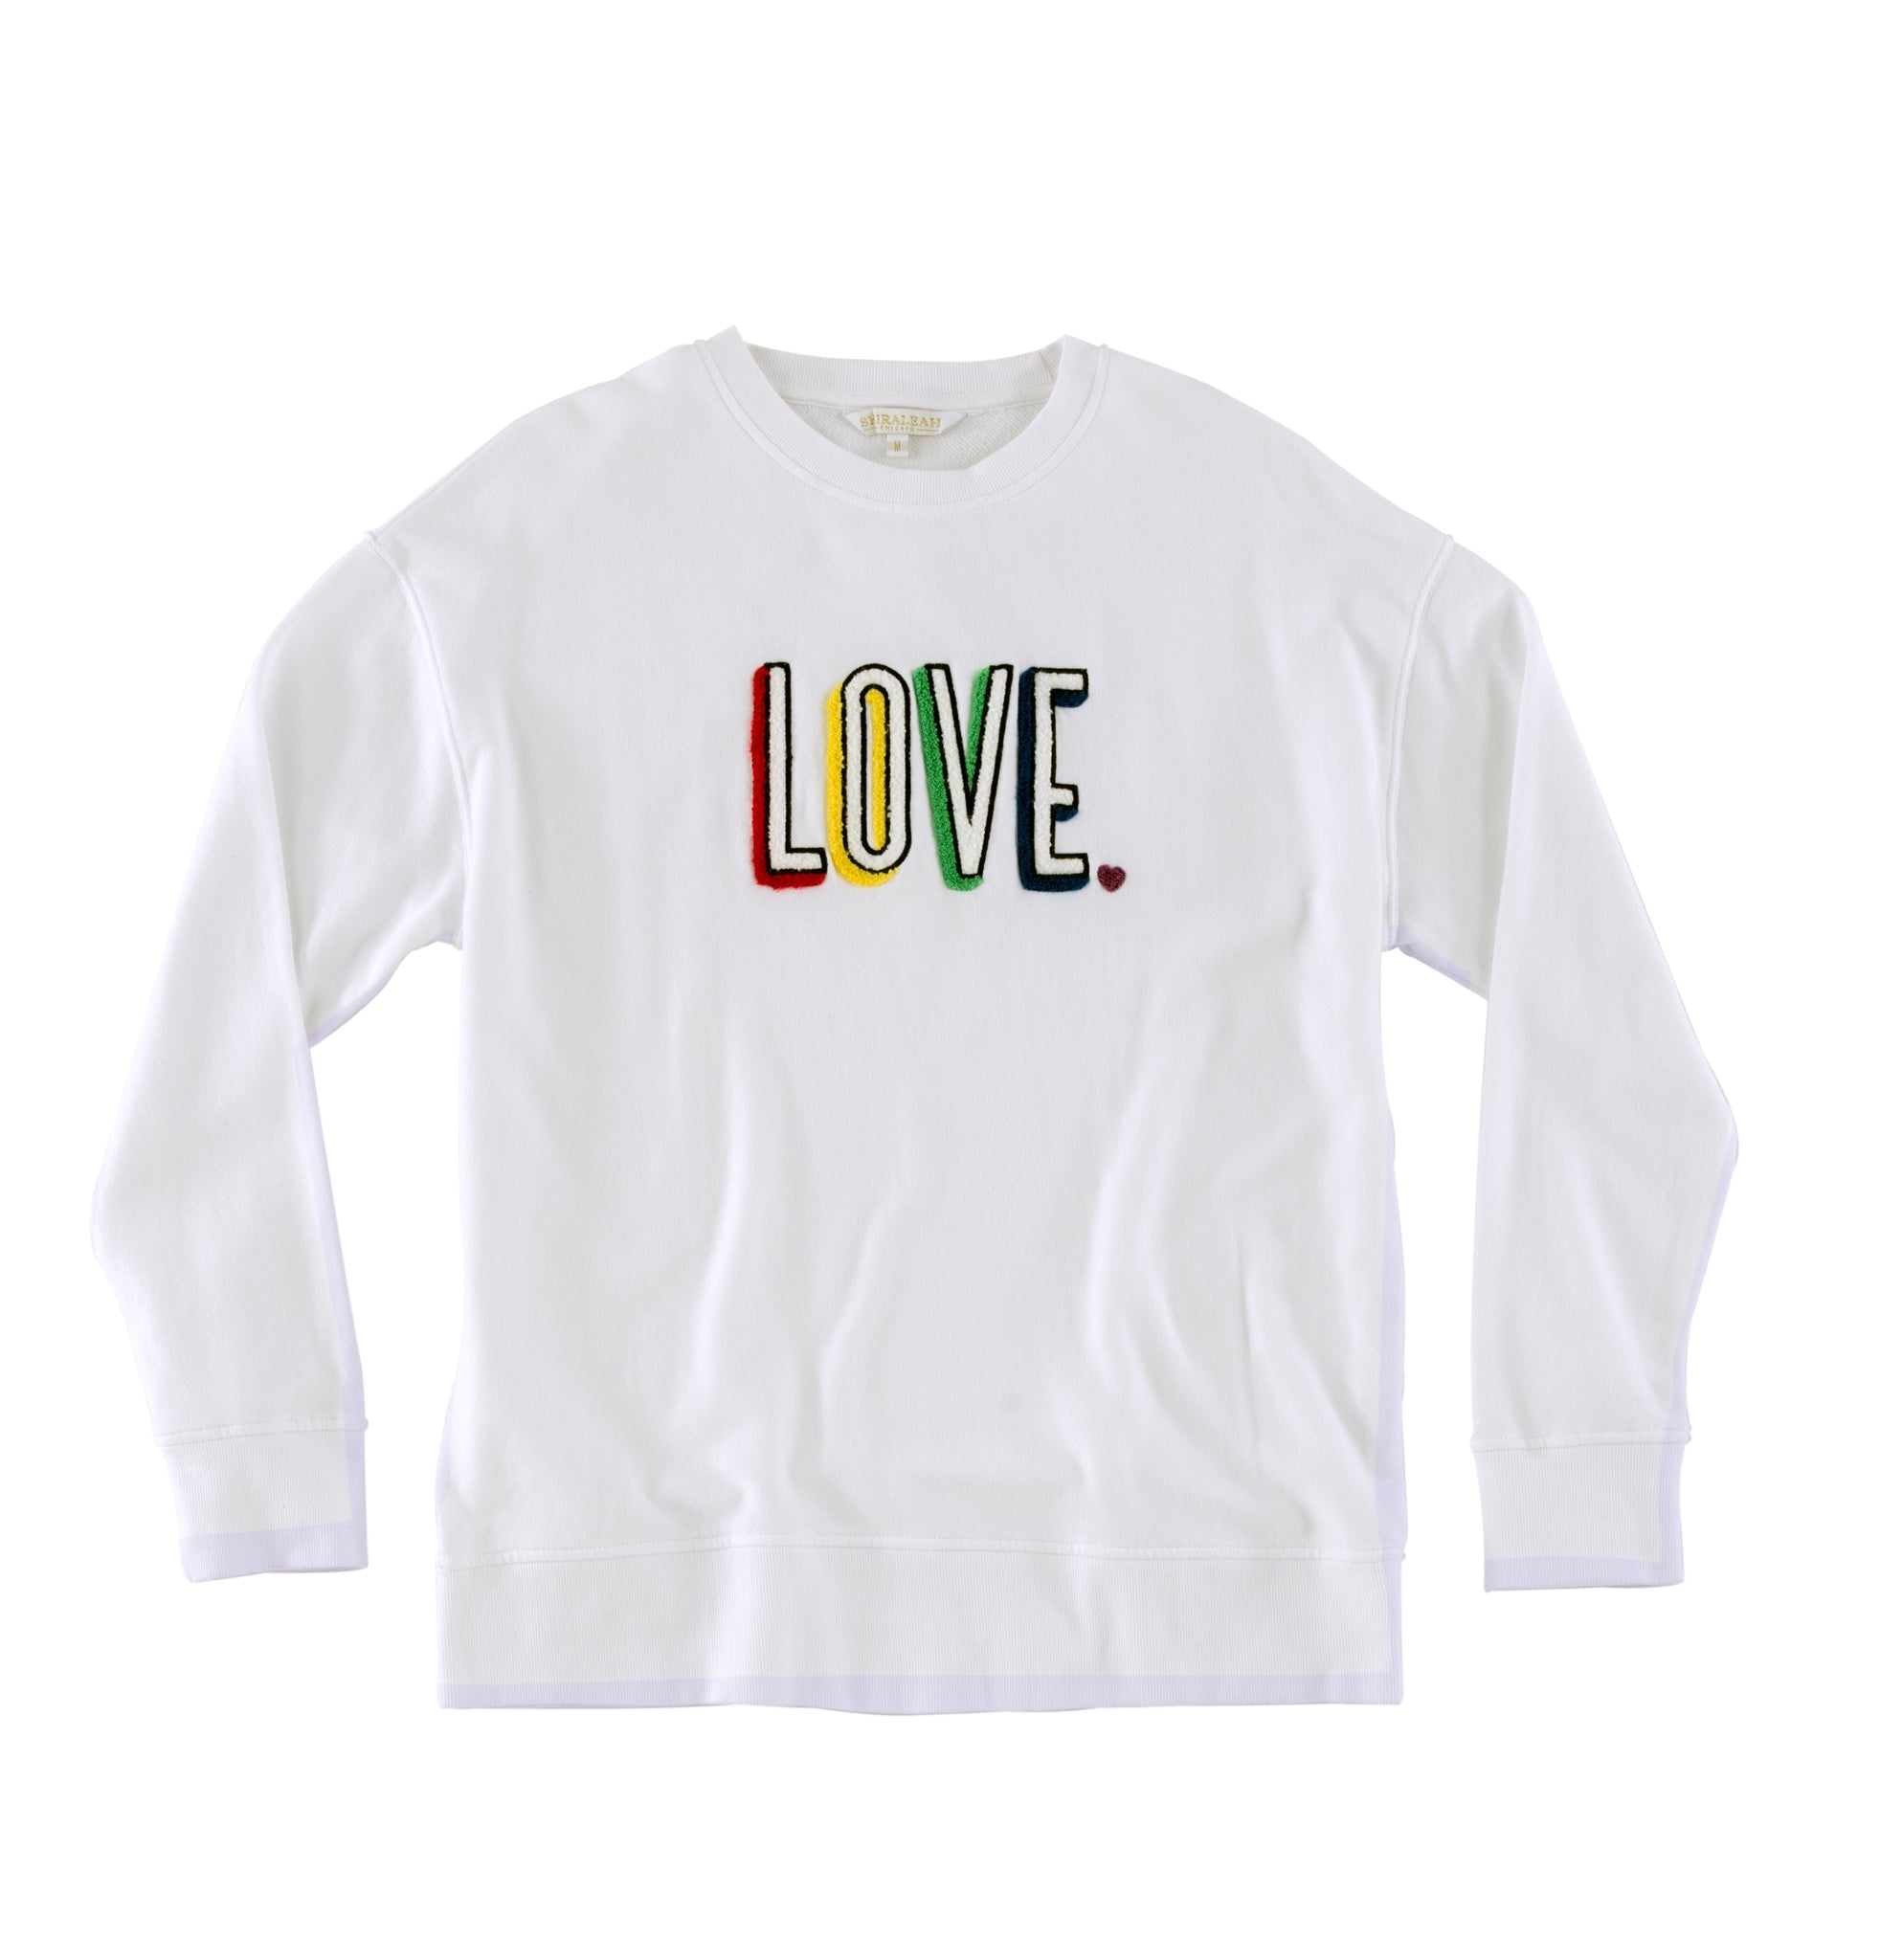 Buy "Love" Sweatshirt, White by Shiraleah